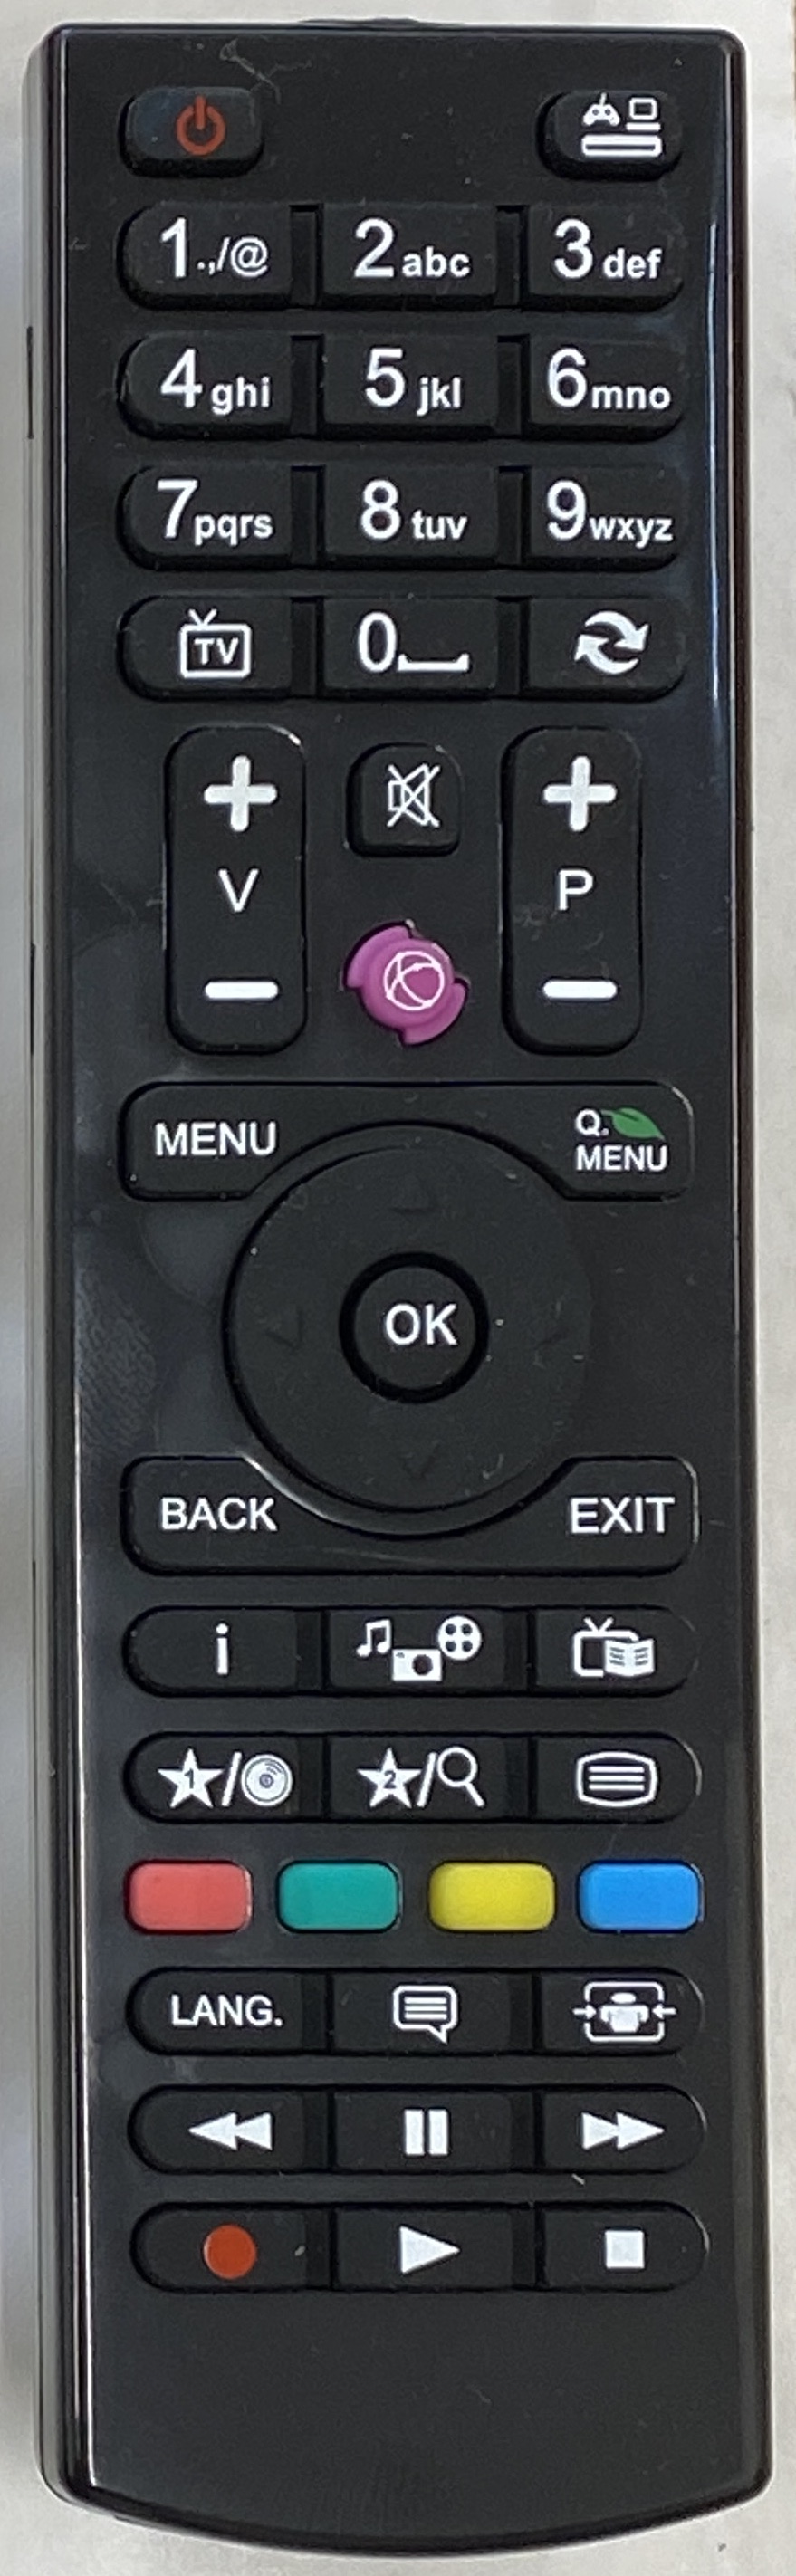 ALBA LED1691HD Remote Control Original